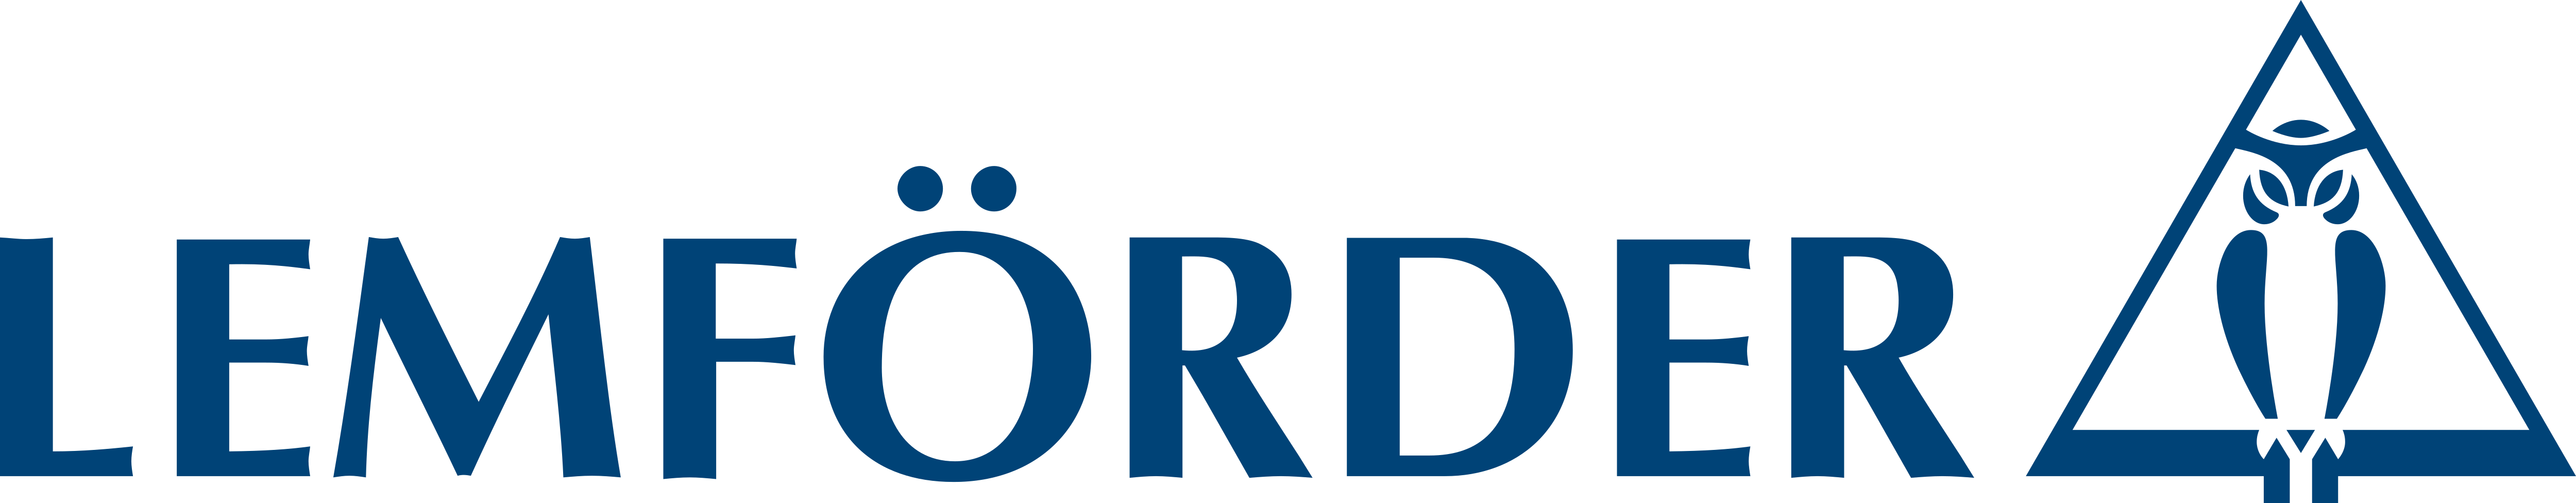 LEMFORDER_Logo